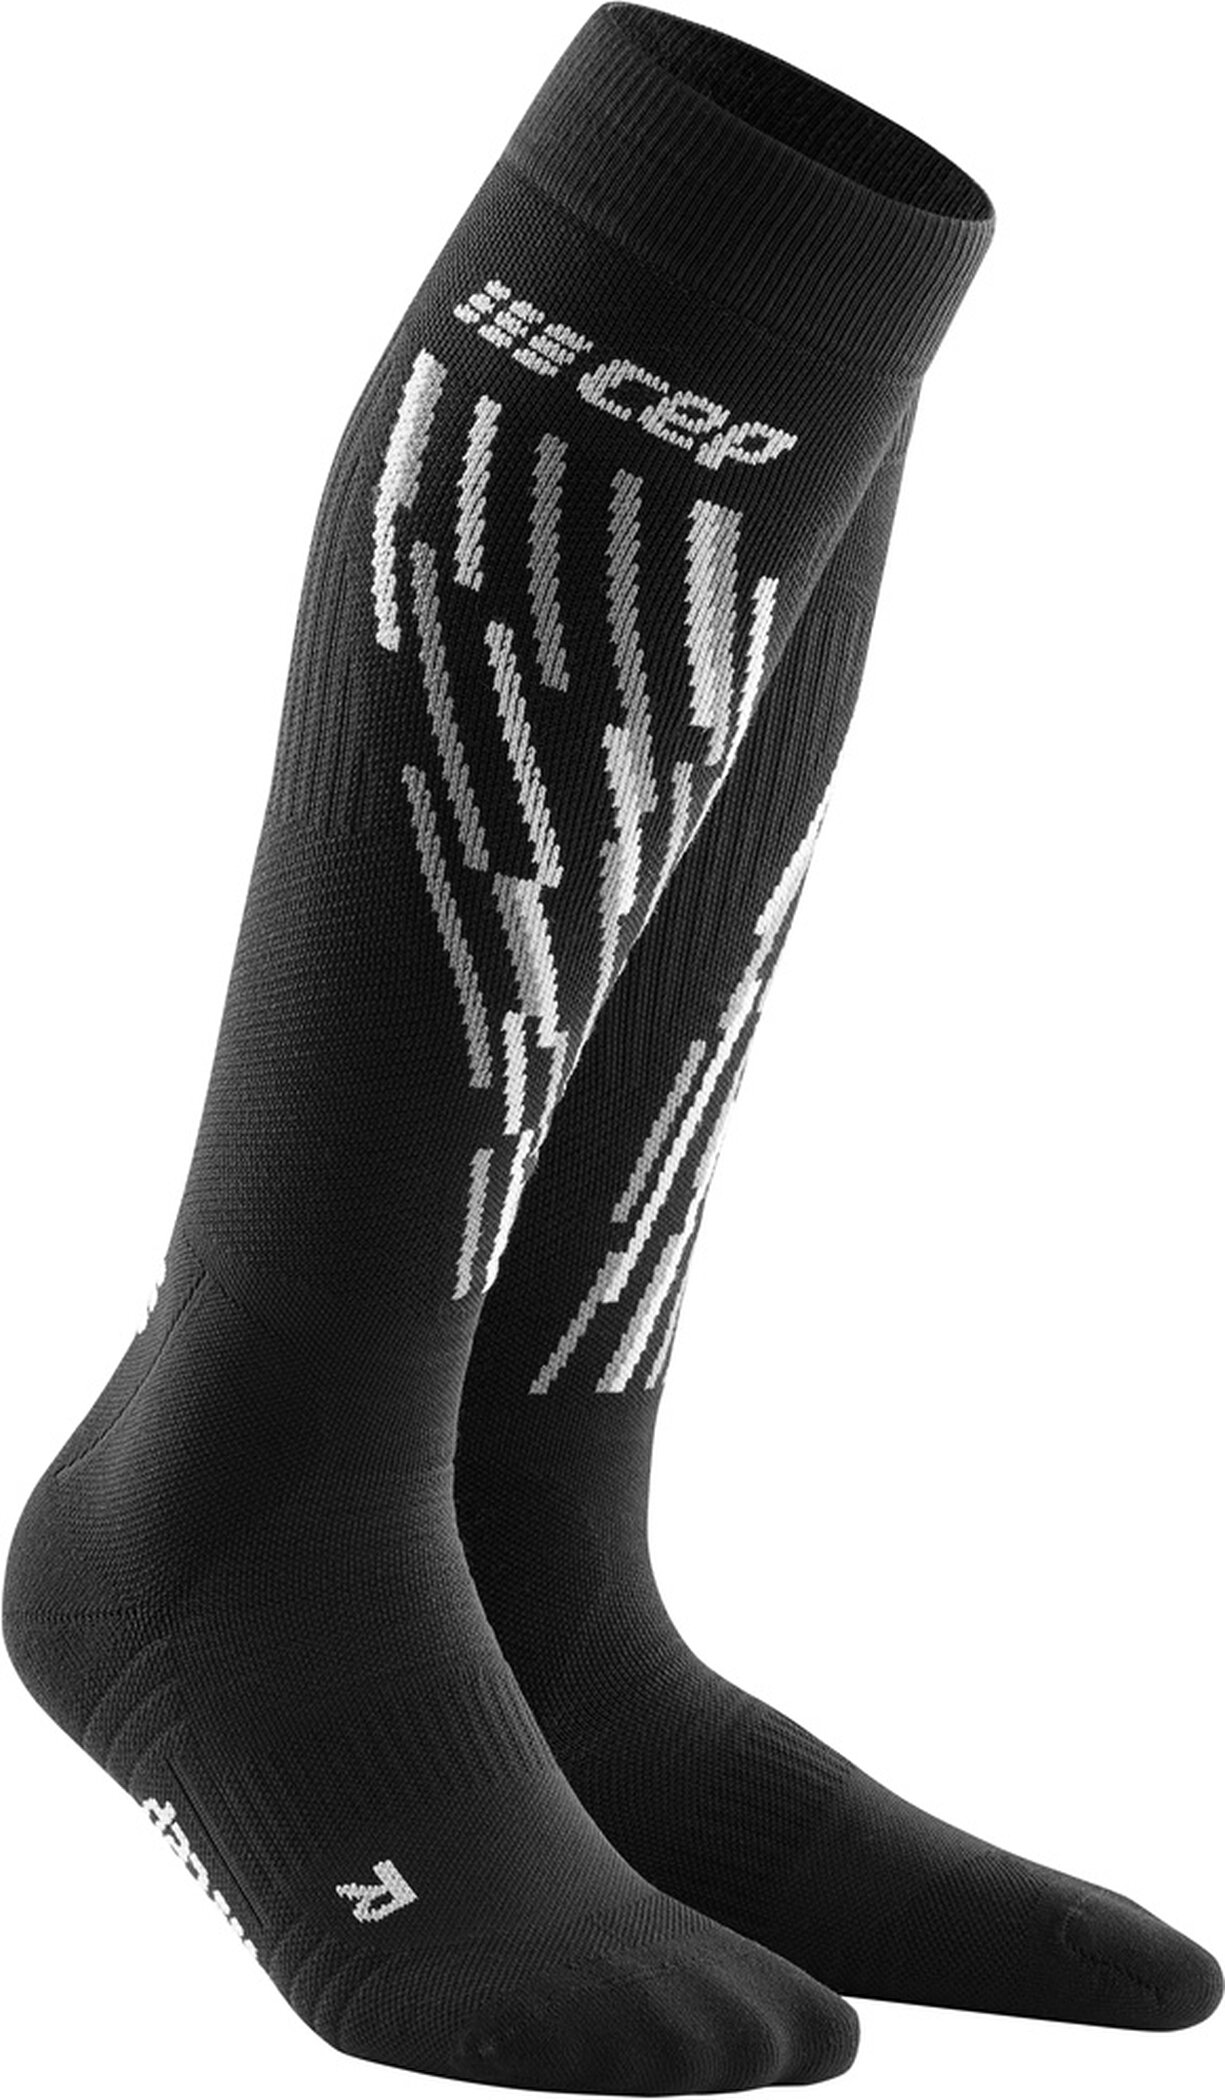 CEP ski thermo socks*, men